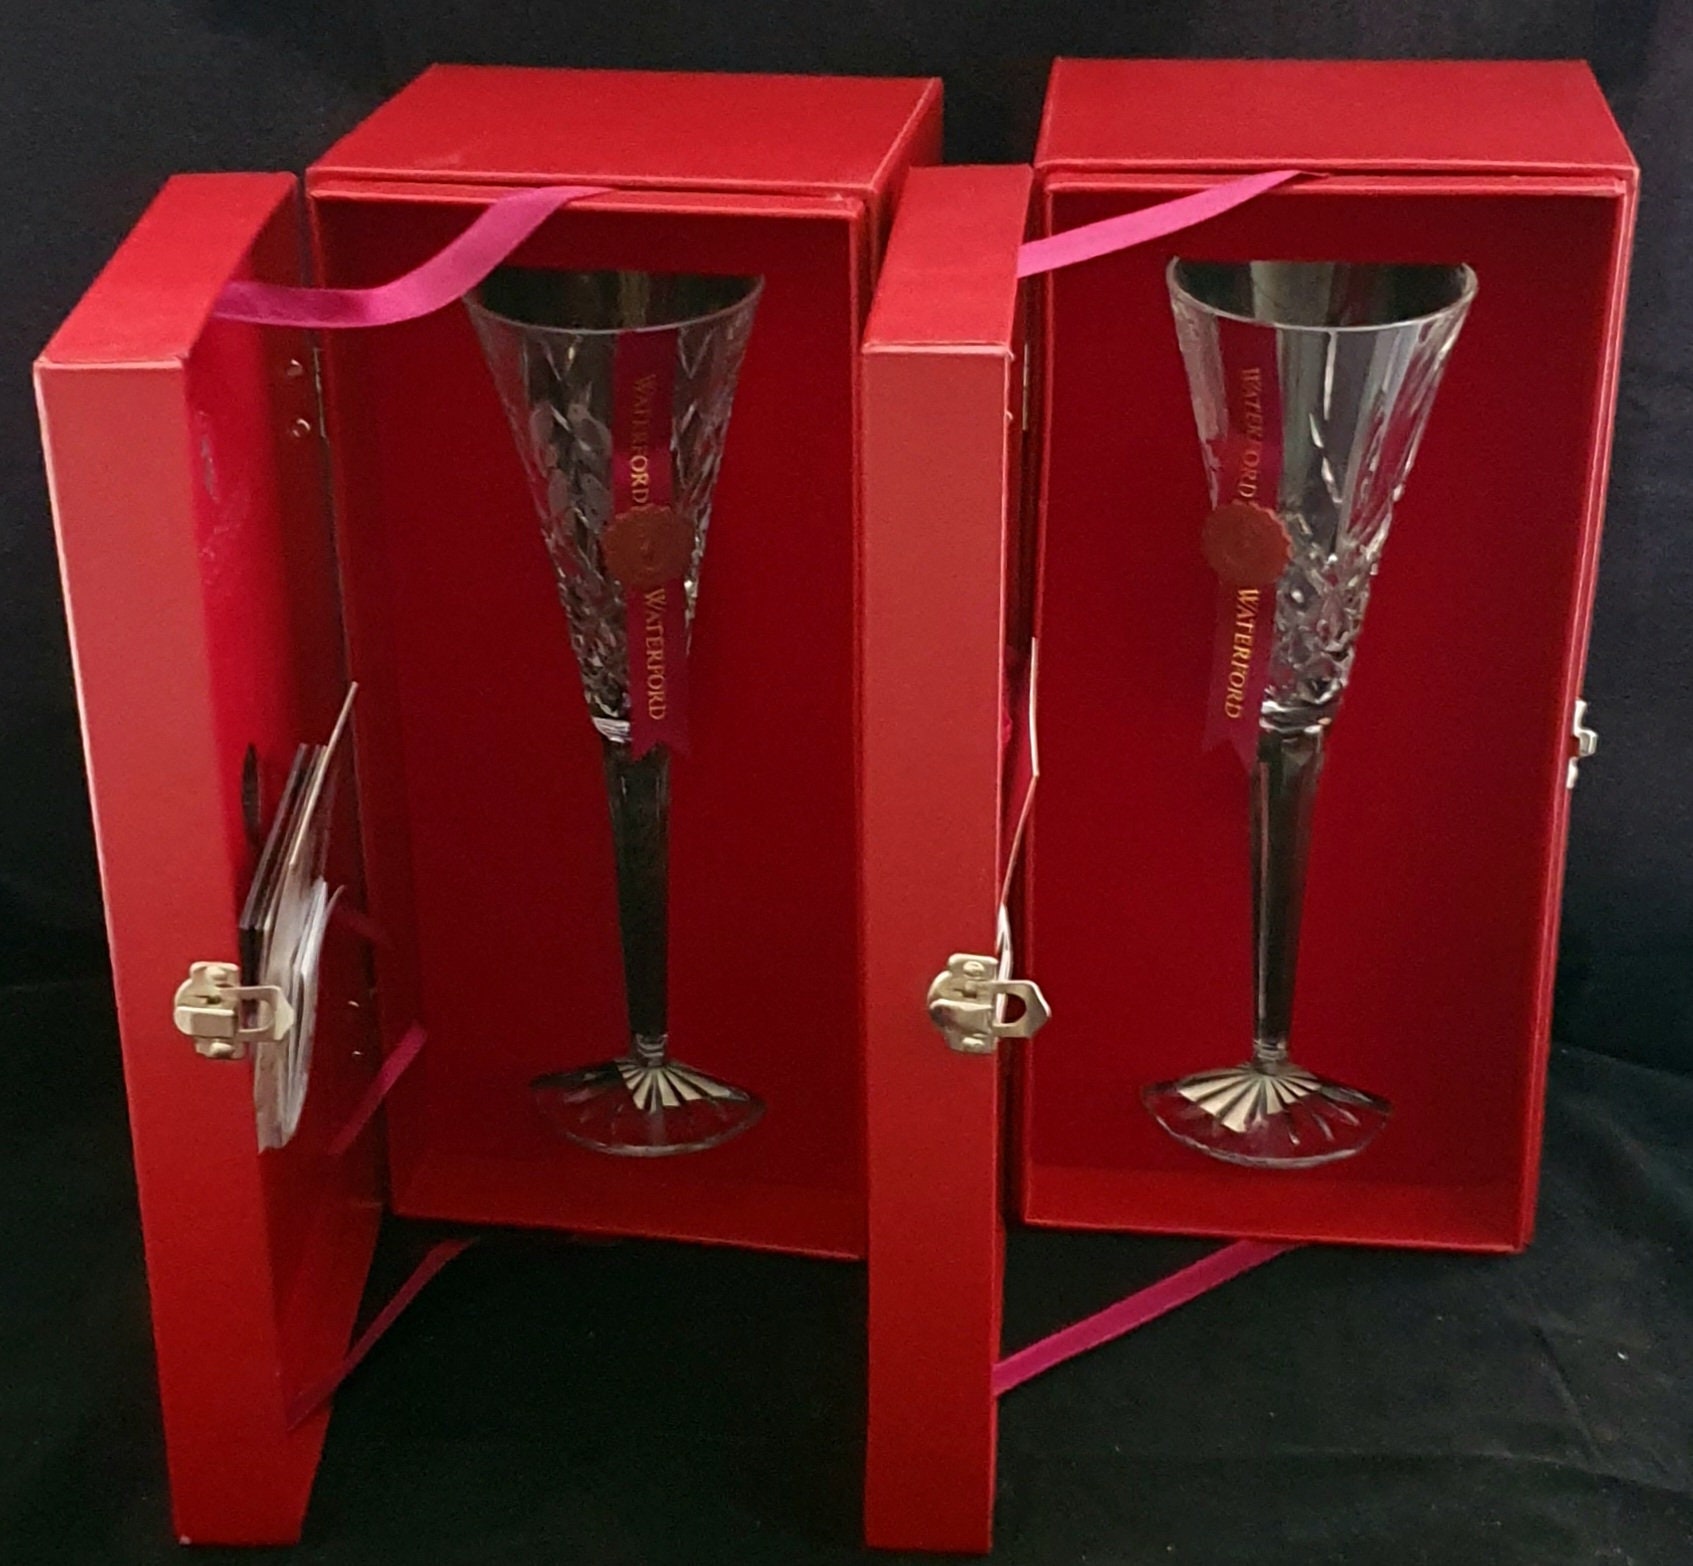 Glassique Cadeau Vintage Flamingo Belle Coupe Glasses for Cocktails and Champagne | Set of 4 | 12 oz Crystal Retro Style Stemmed Saucers for Elegant